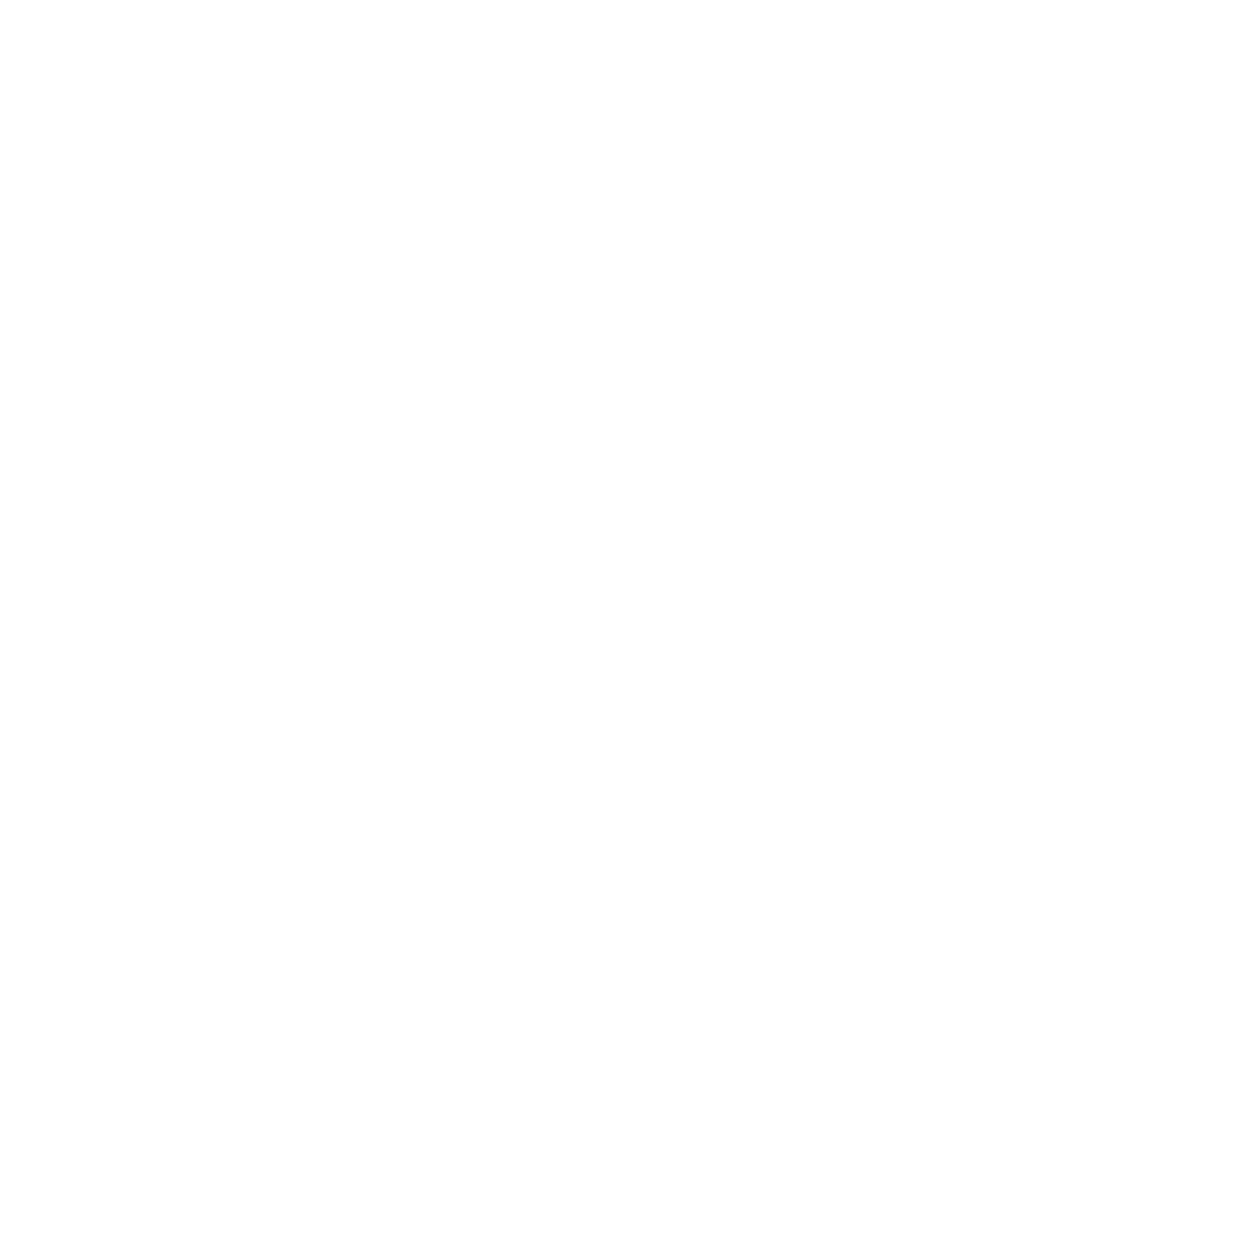 Photo du logo level up event, créer par jean marc Fournier, nous pouvons voir le nom de l'entreprise et une forme géométrique en guise de symbole 